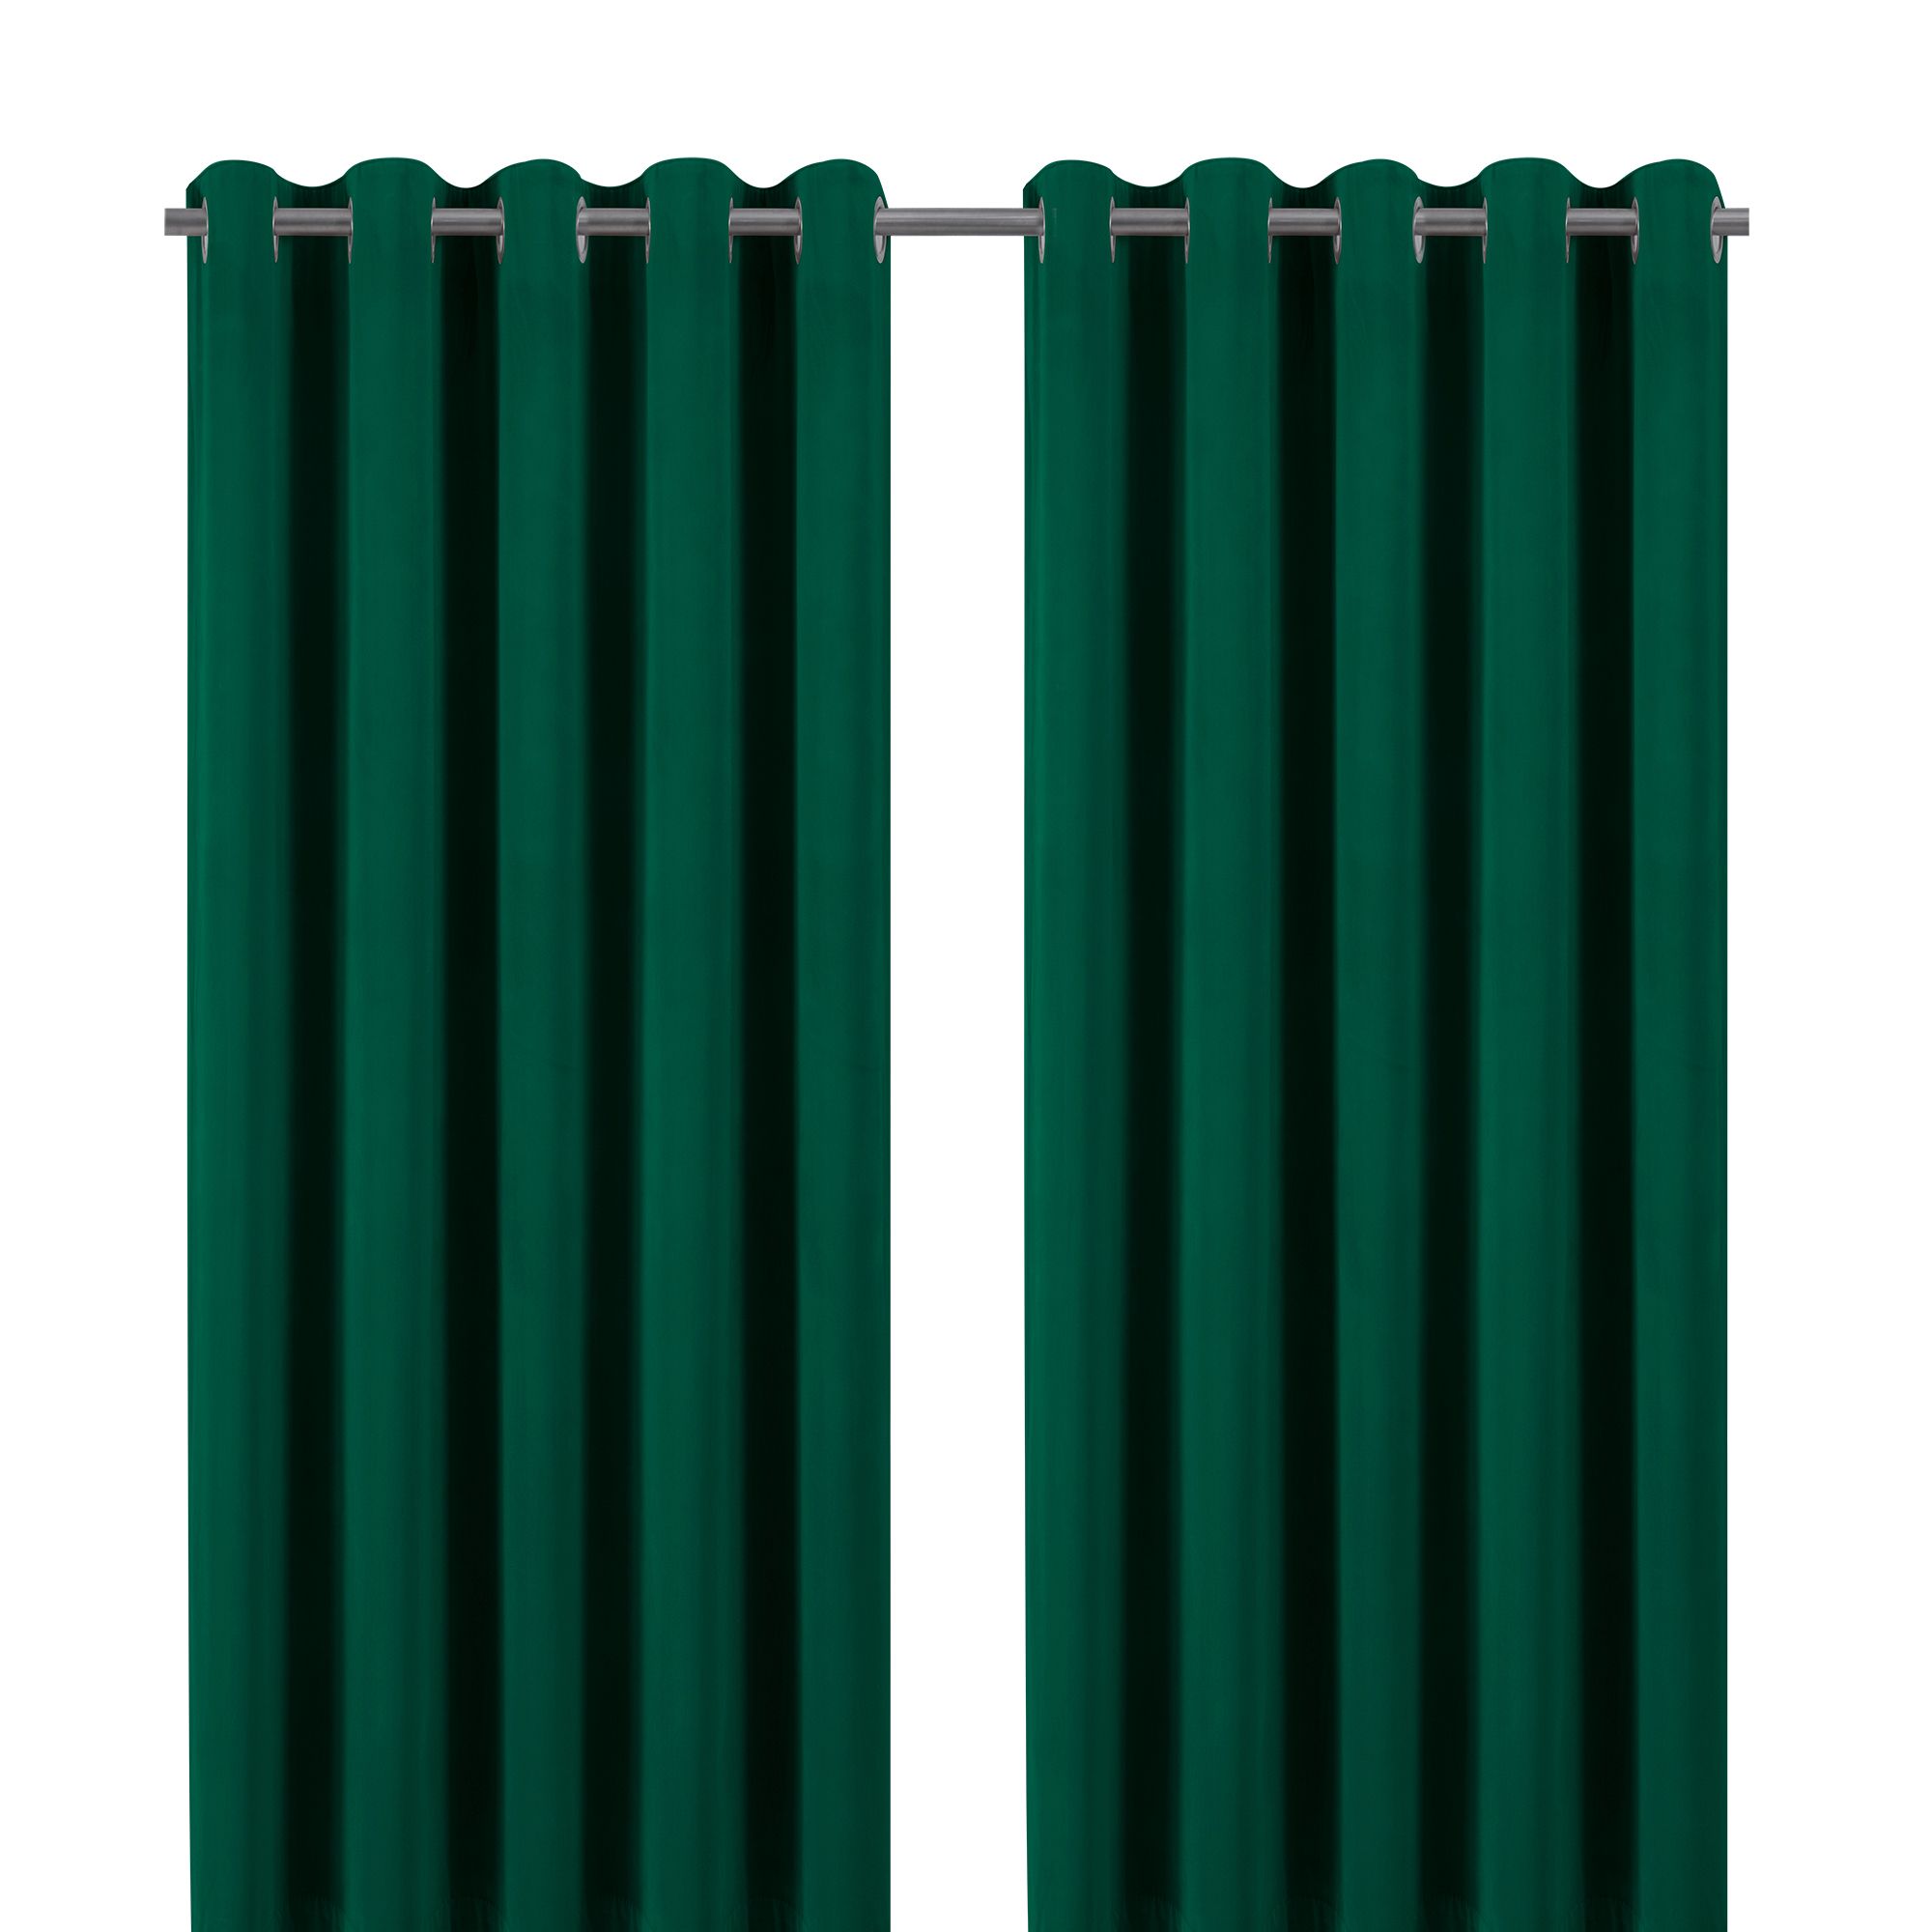 Valgreta Dark green Velvet Lined Eyelet Curtain (W)16.7cm (L)18.3cm, Pair